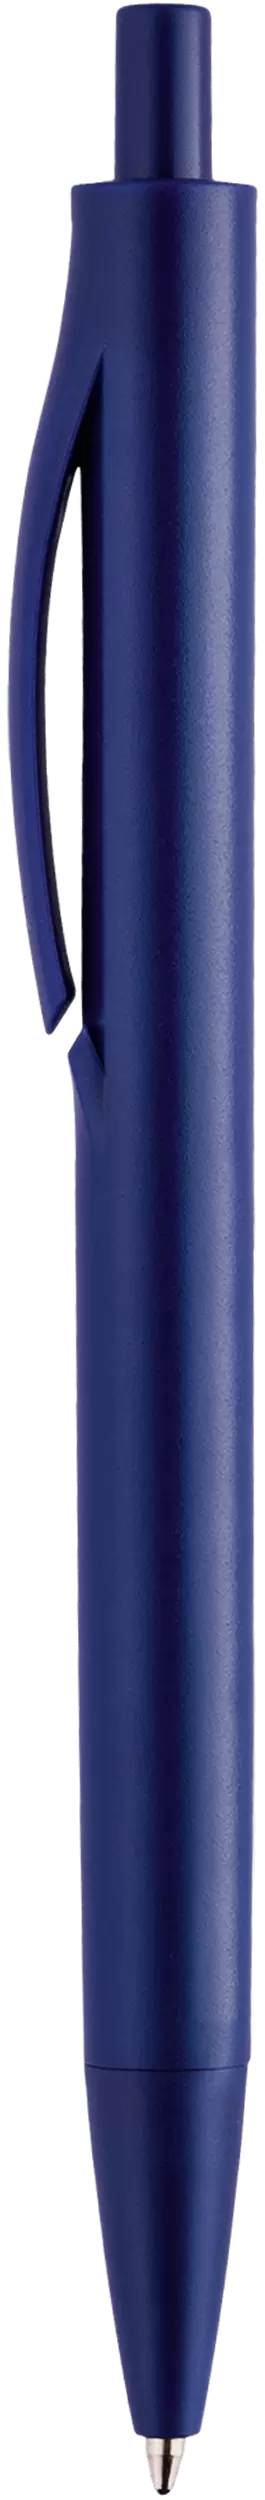 Ручка IGLA COLOR Темно-синяя 1031-14